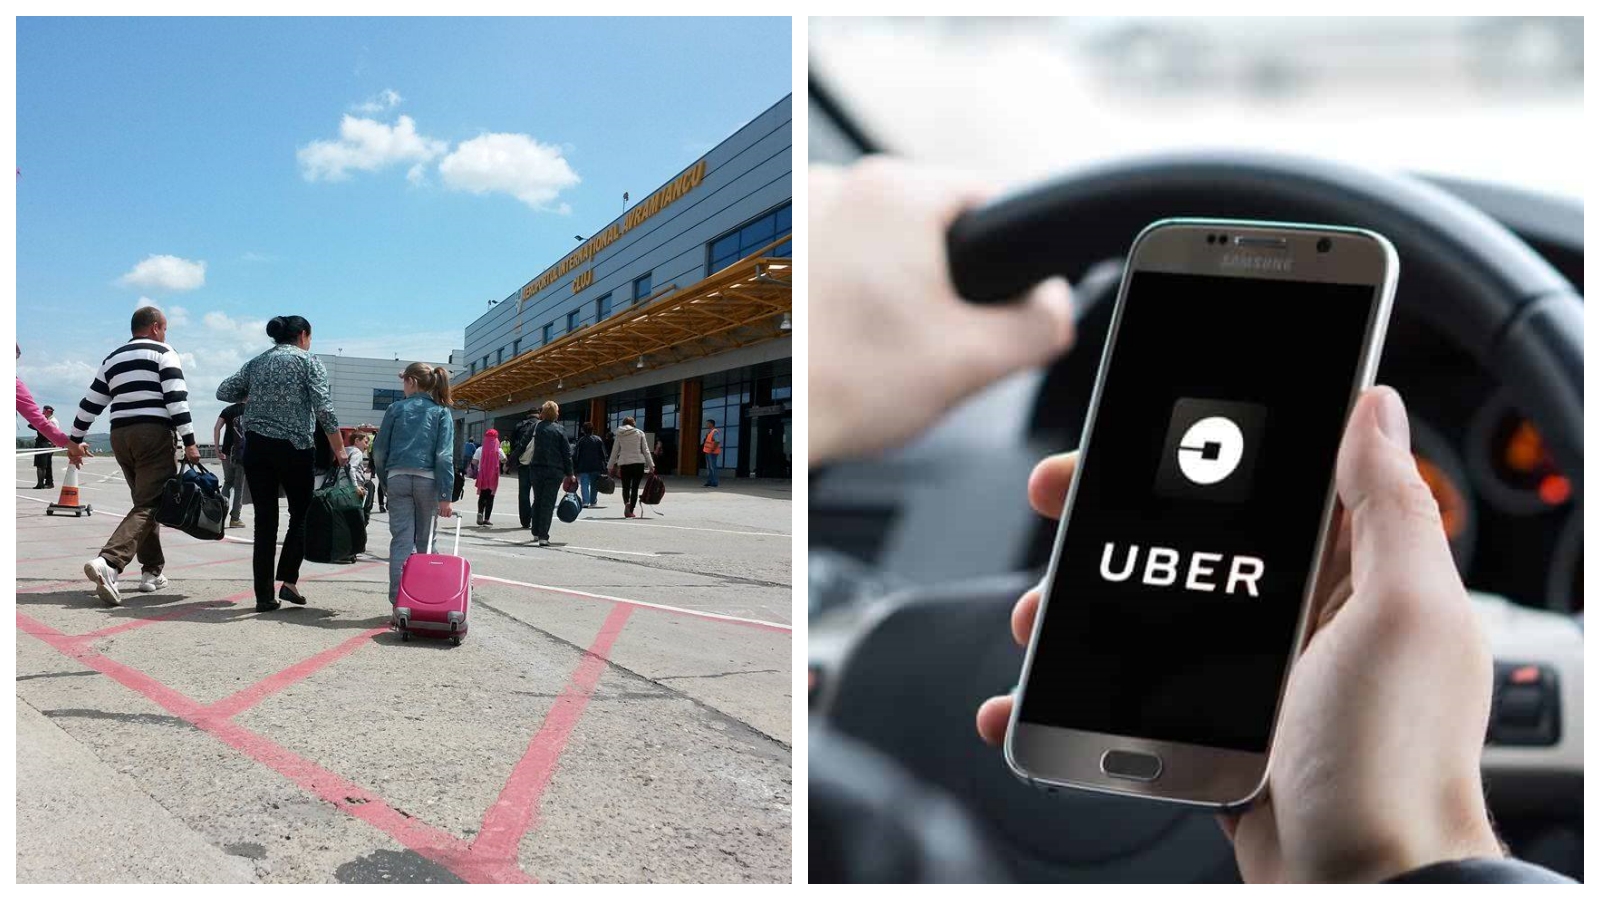 Preț aberant Uber pentru o cursă de la Aeroportul Cluj: Ce se intampla cu prețurile de Uber?